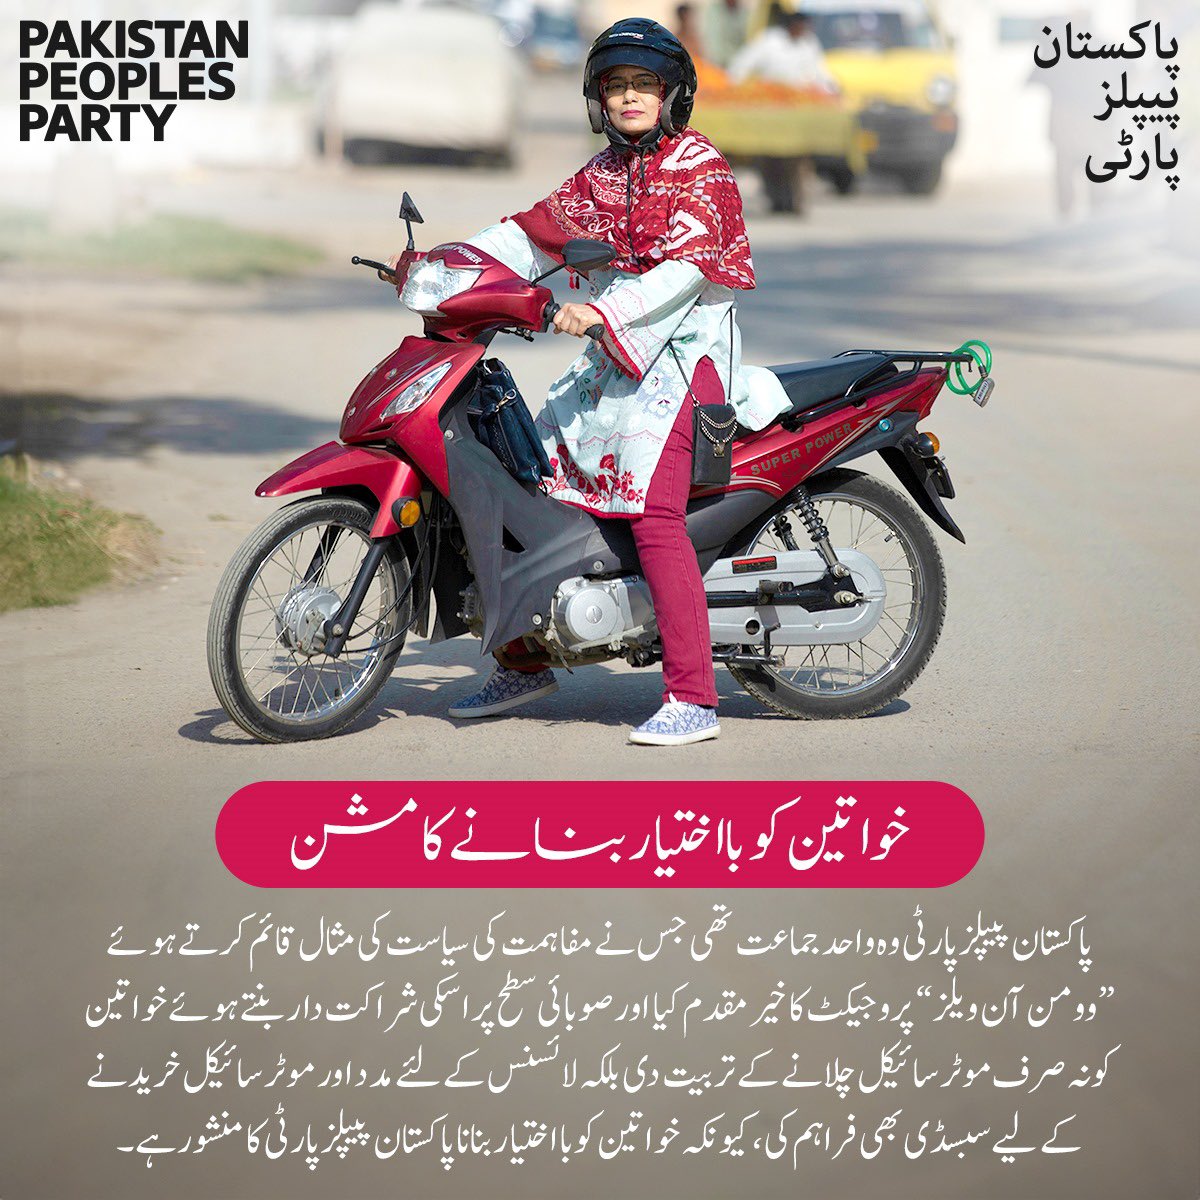 پاکستان پیپلز پارٹی وہ واحد جماعت ہے جس نے خواتین کو نہ صرف موٹر سائیکل چلانے کے تربیت دی بلکہ لائسنس کے لئے مدد اور موٹر سائیکل خریدنے کے لیے سبسڈی بھی فراہم کی، کیونکہ خواتین کو بااختیار بنانا پاکستان پیپلز پارٹی کا منشور ہے۔

#WomenOnWheels